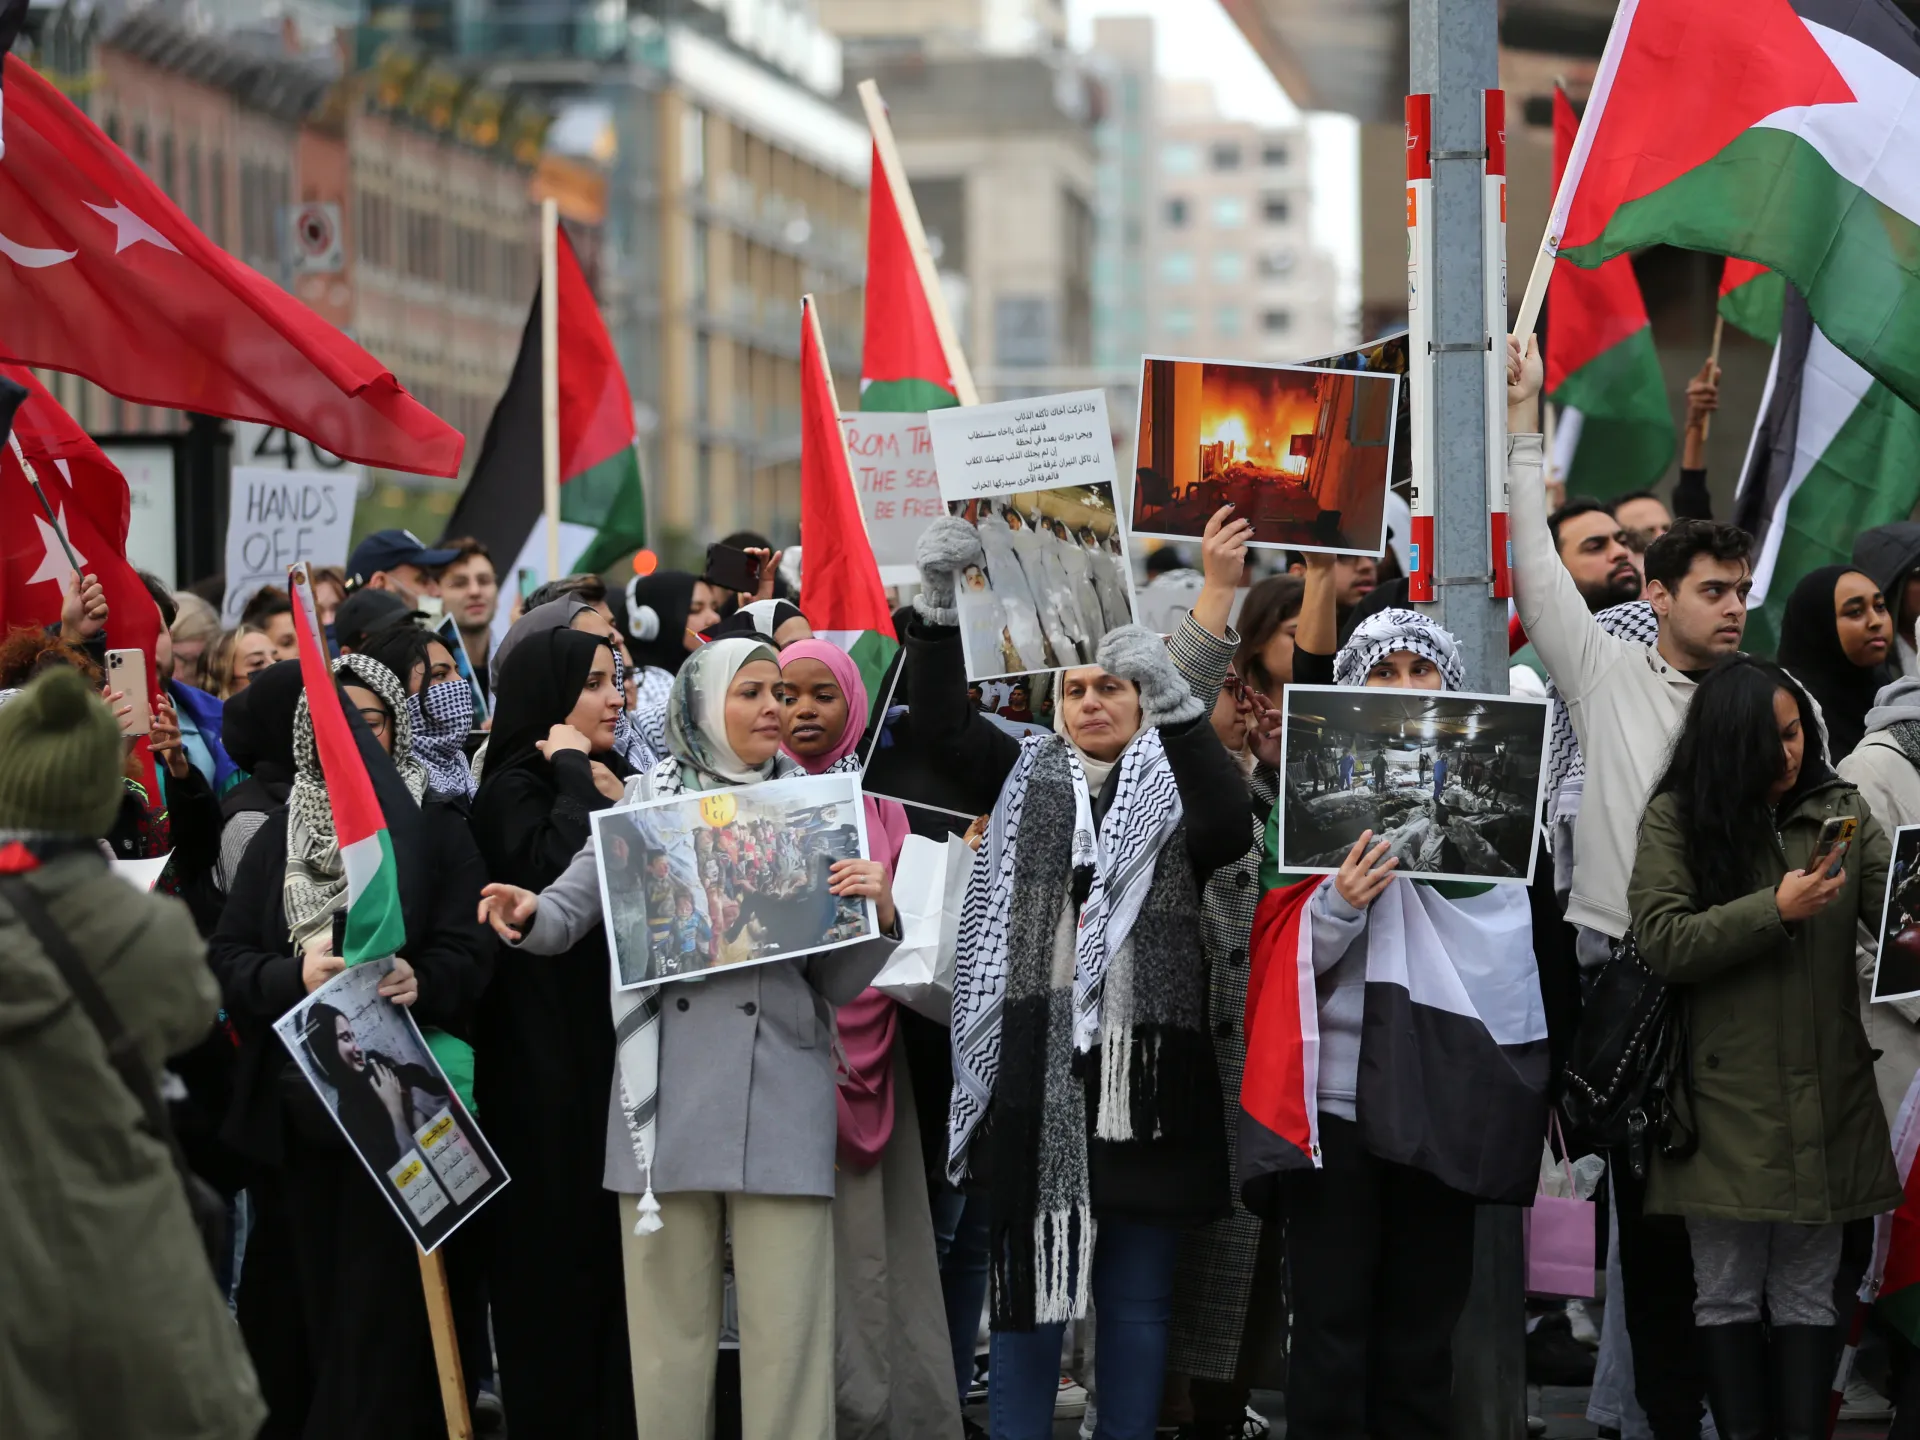 واشنطن: مؤسسات حقوقية تستعد لأسبوع من المظاهرات والفعاليات لوقف العداون الإسرائيلي